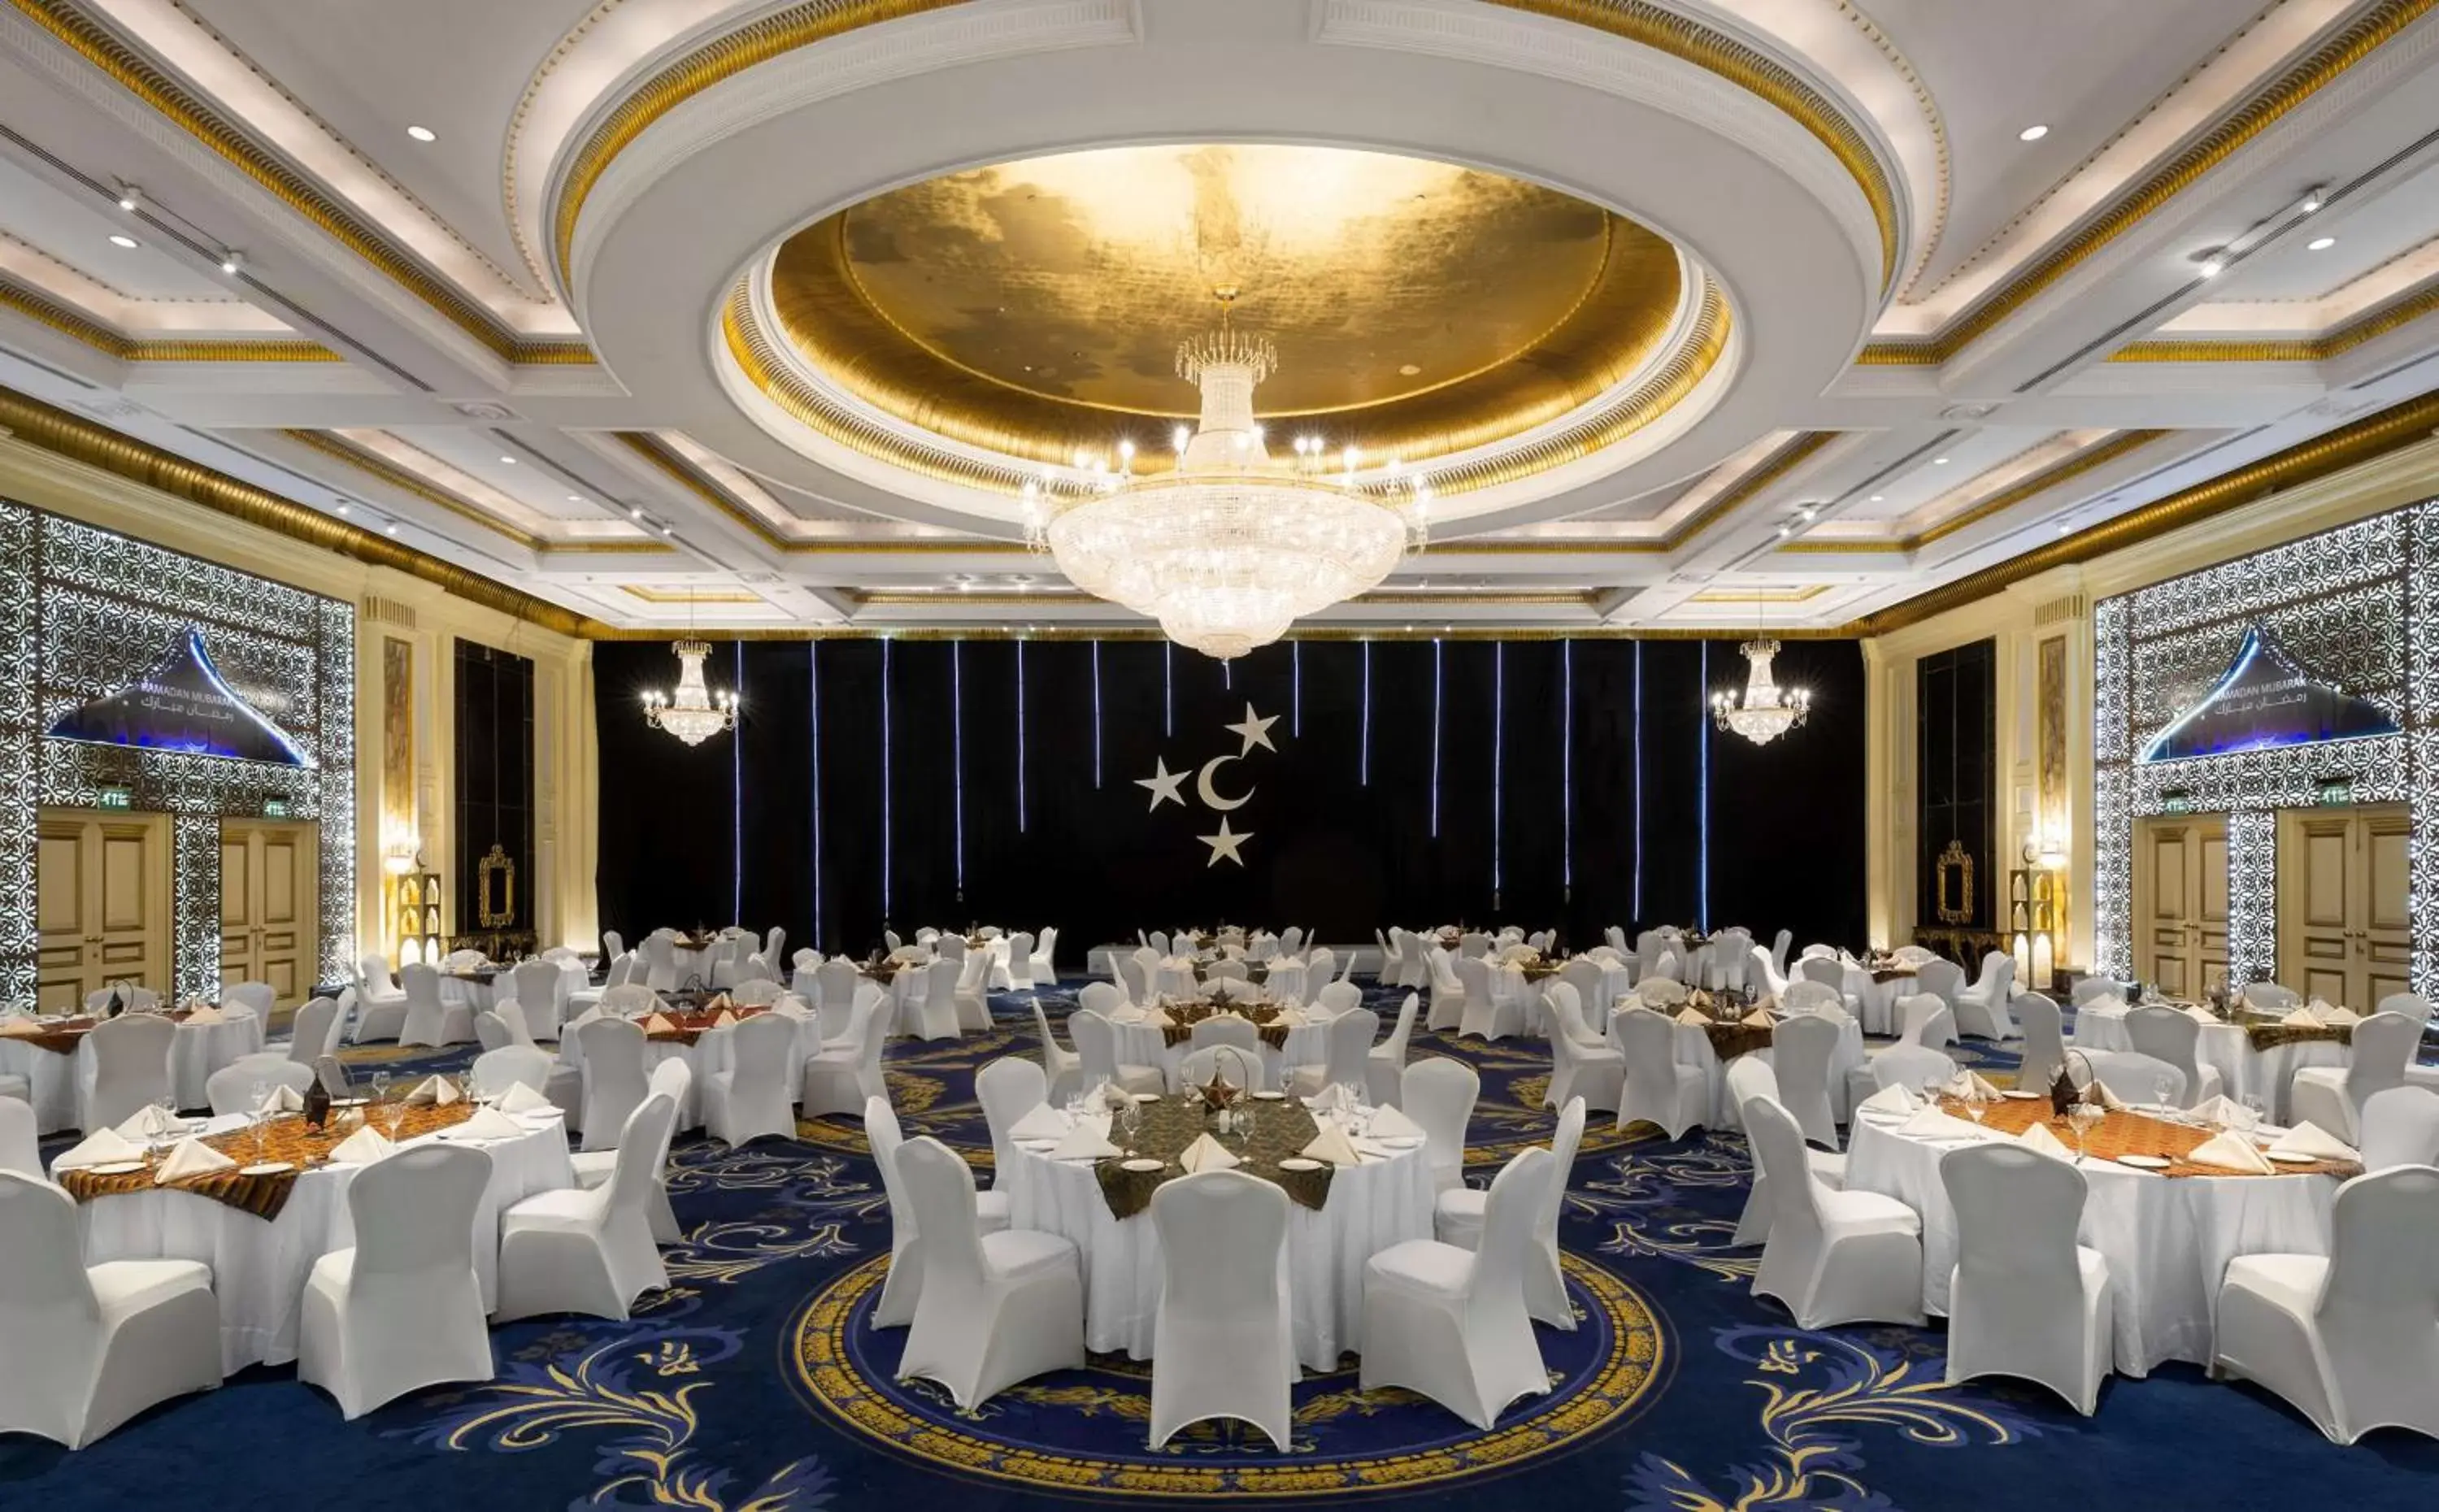 On site, Banquet Facilities in Radisson Blu Hotel, Riyadh